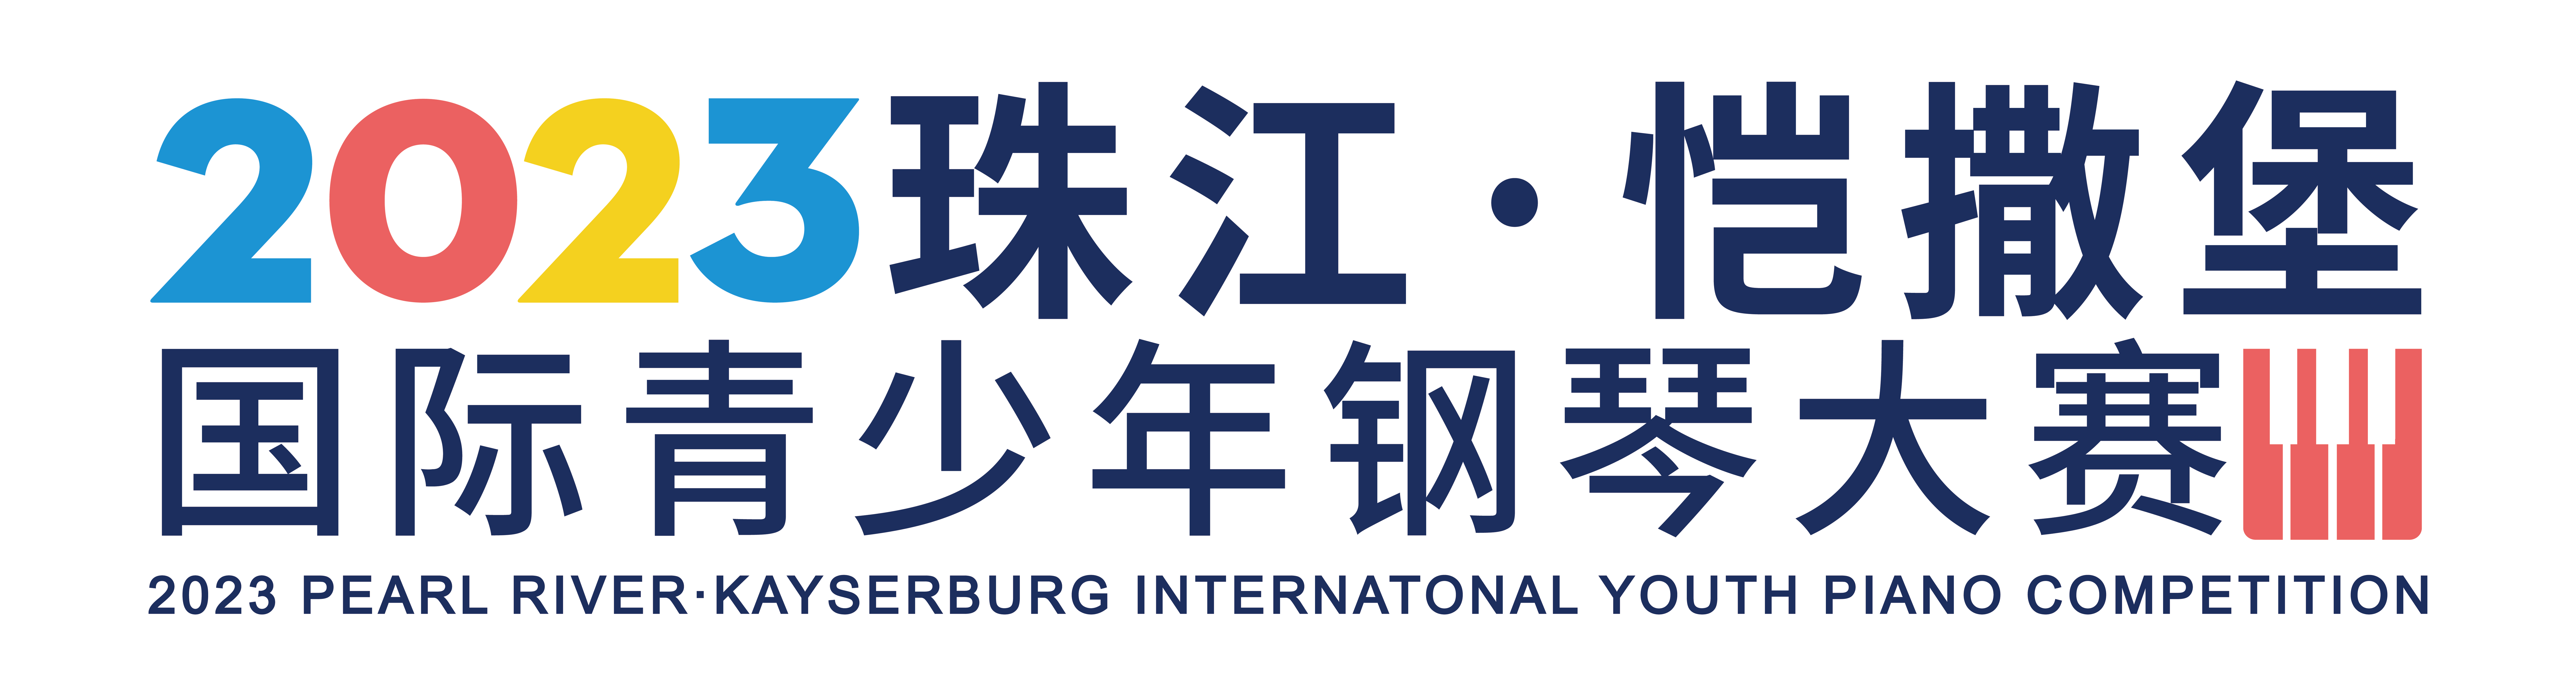 2023年“珠江·恺撒堡” 国际青少年钢琴大赛呼和浩特市分赛区初赛时间及线下报名点通知